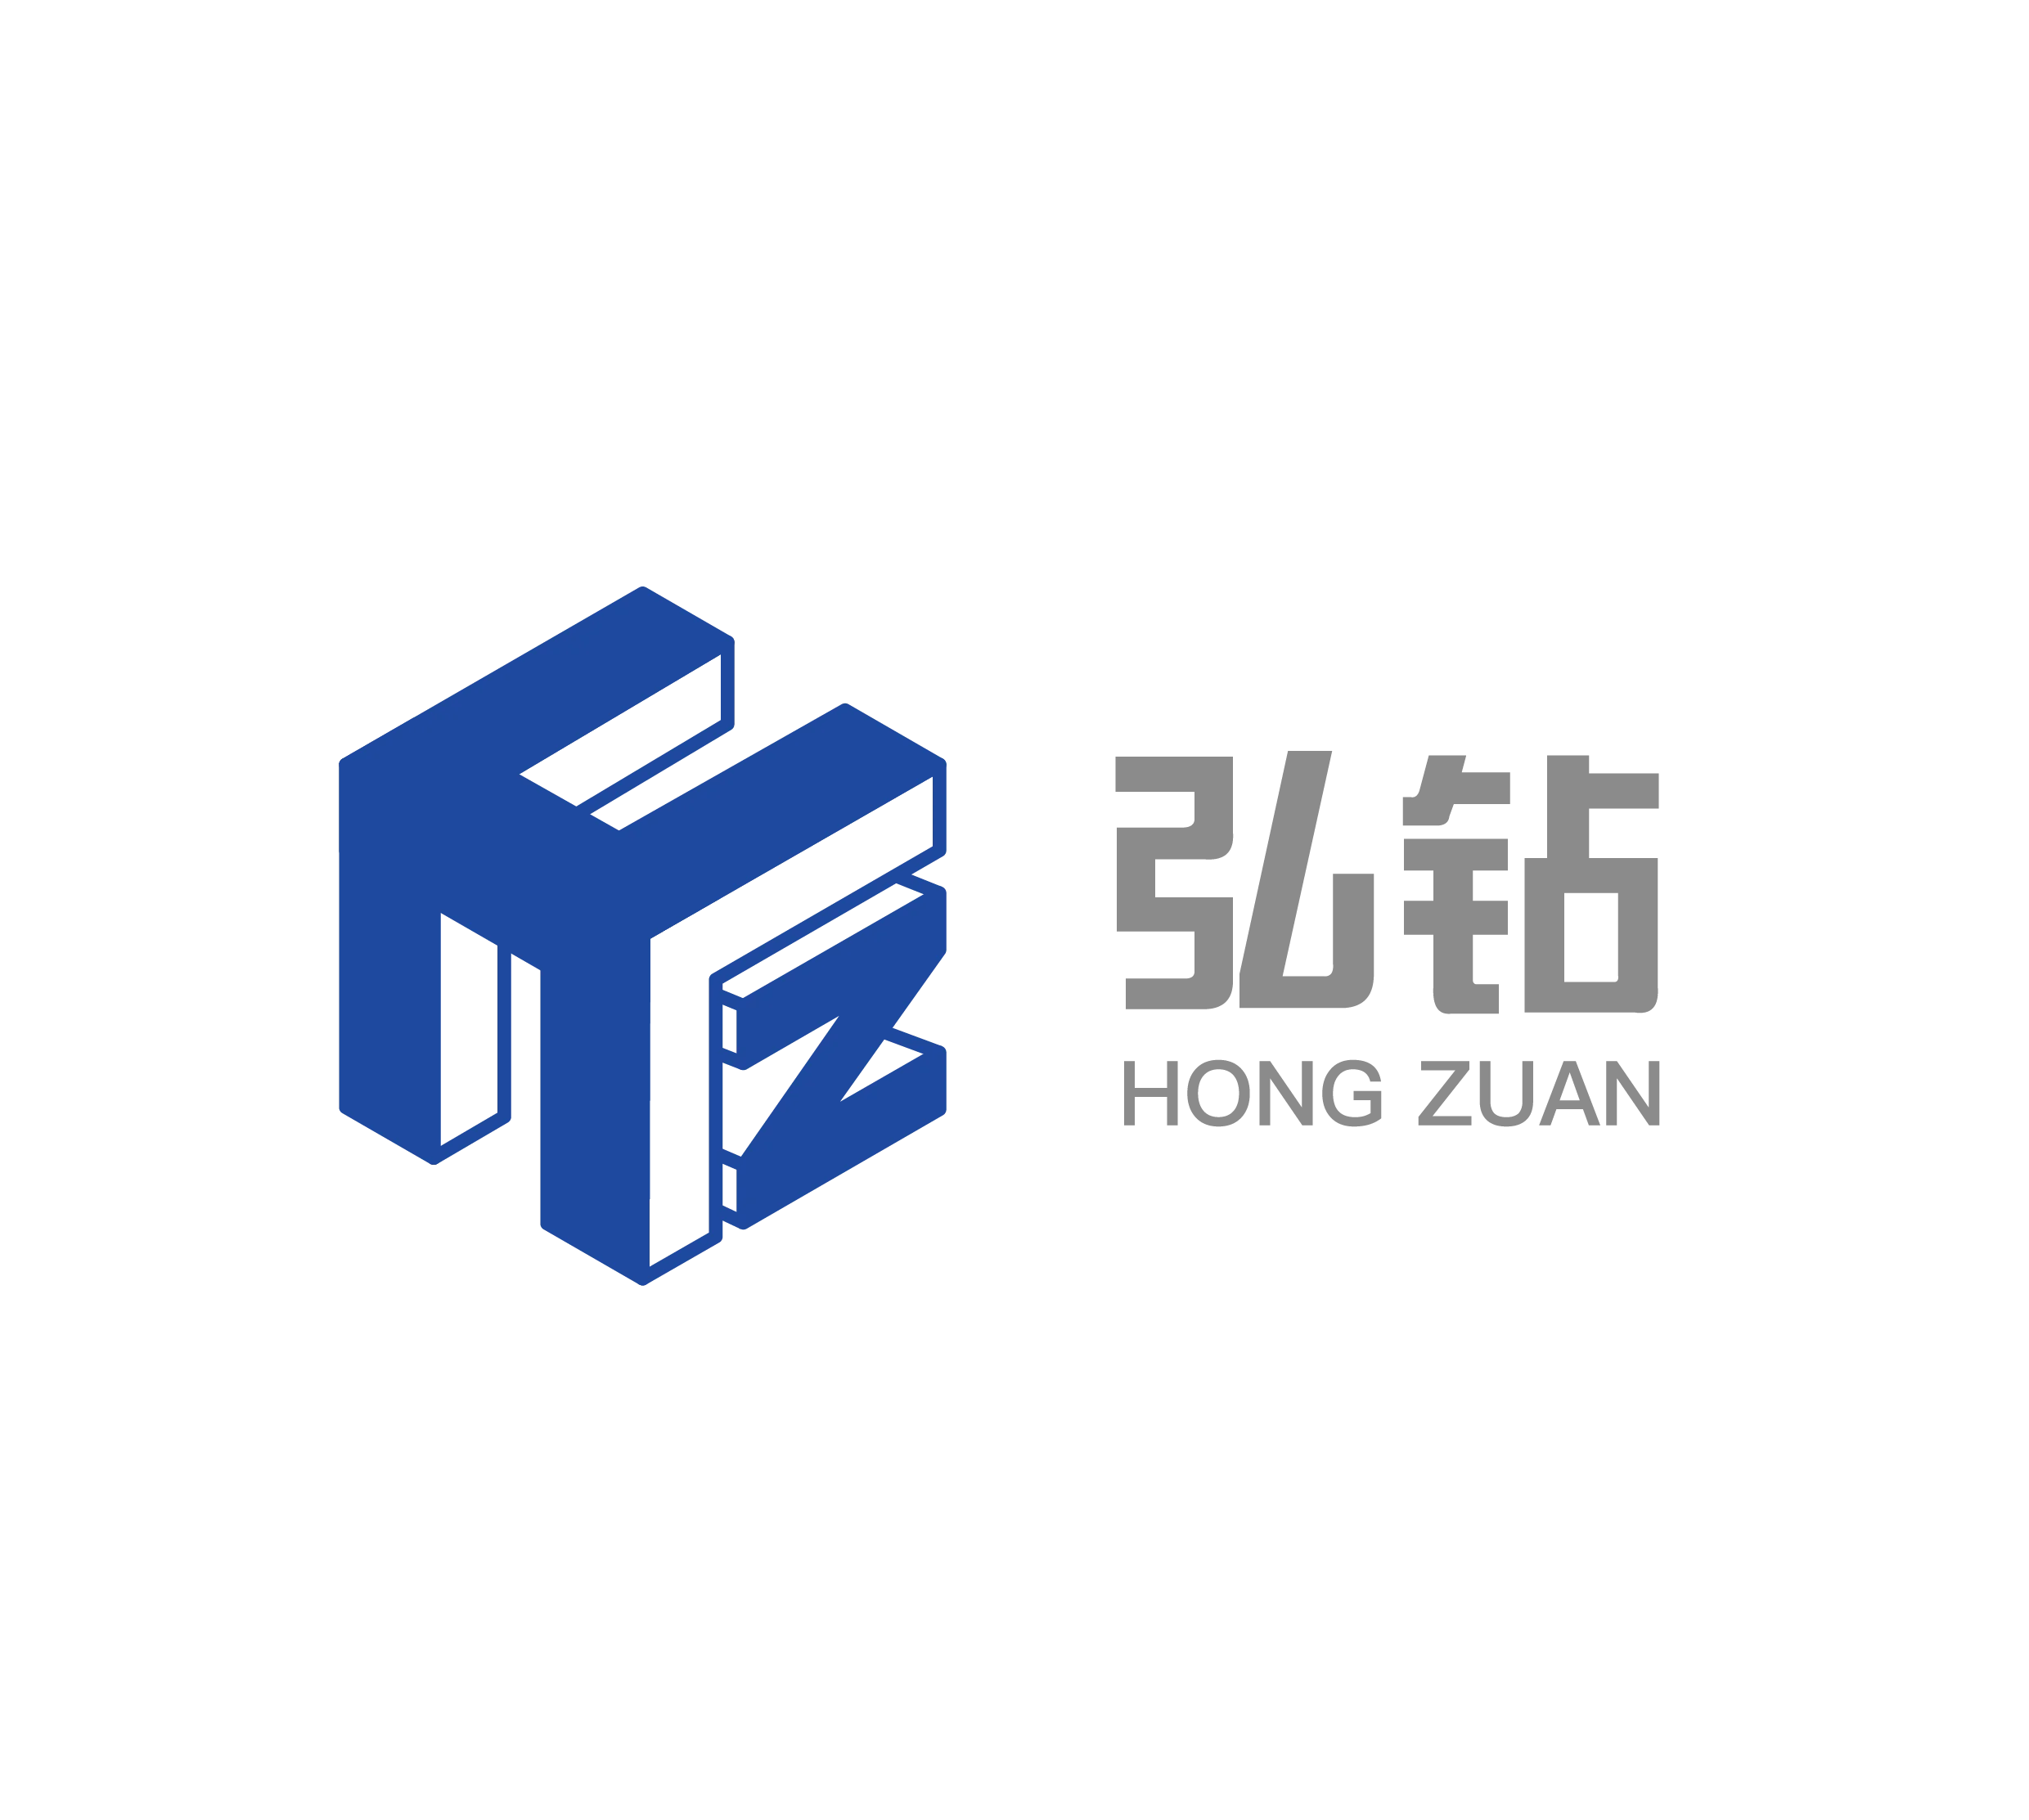 HONG ZUAN